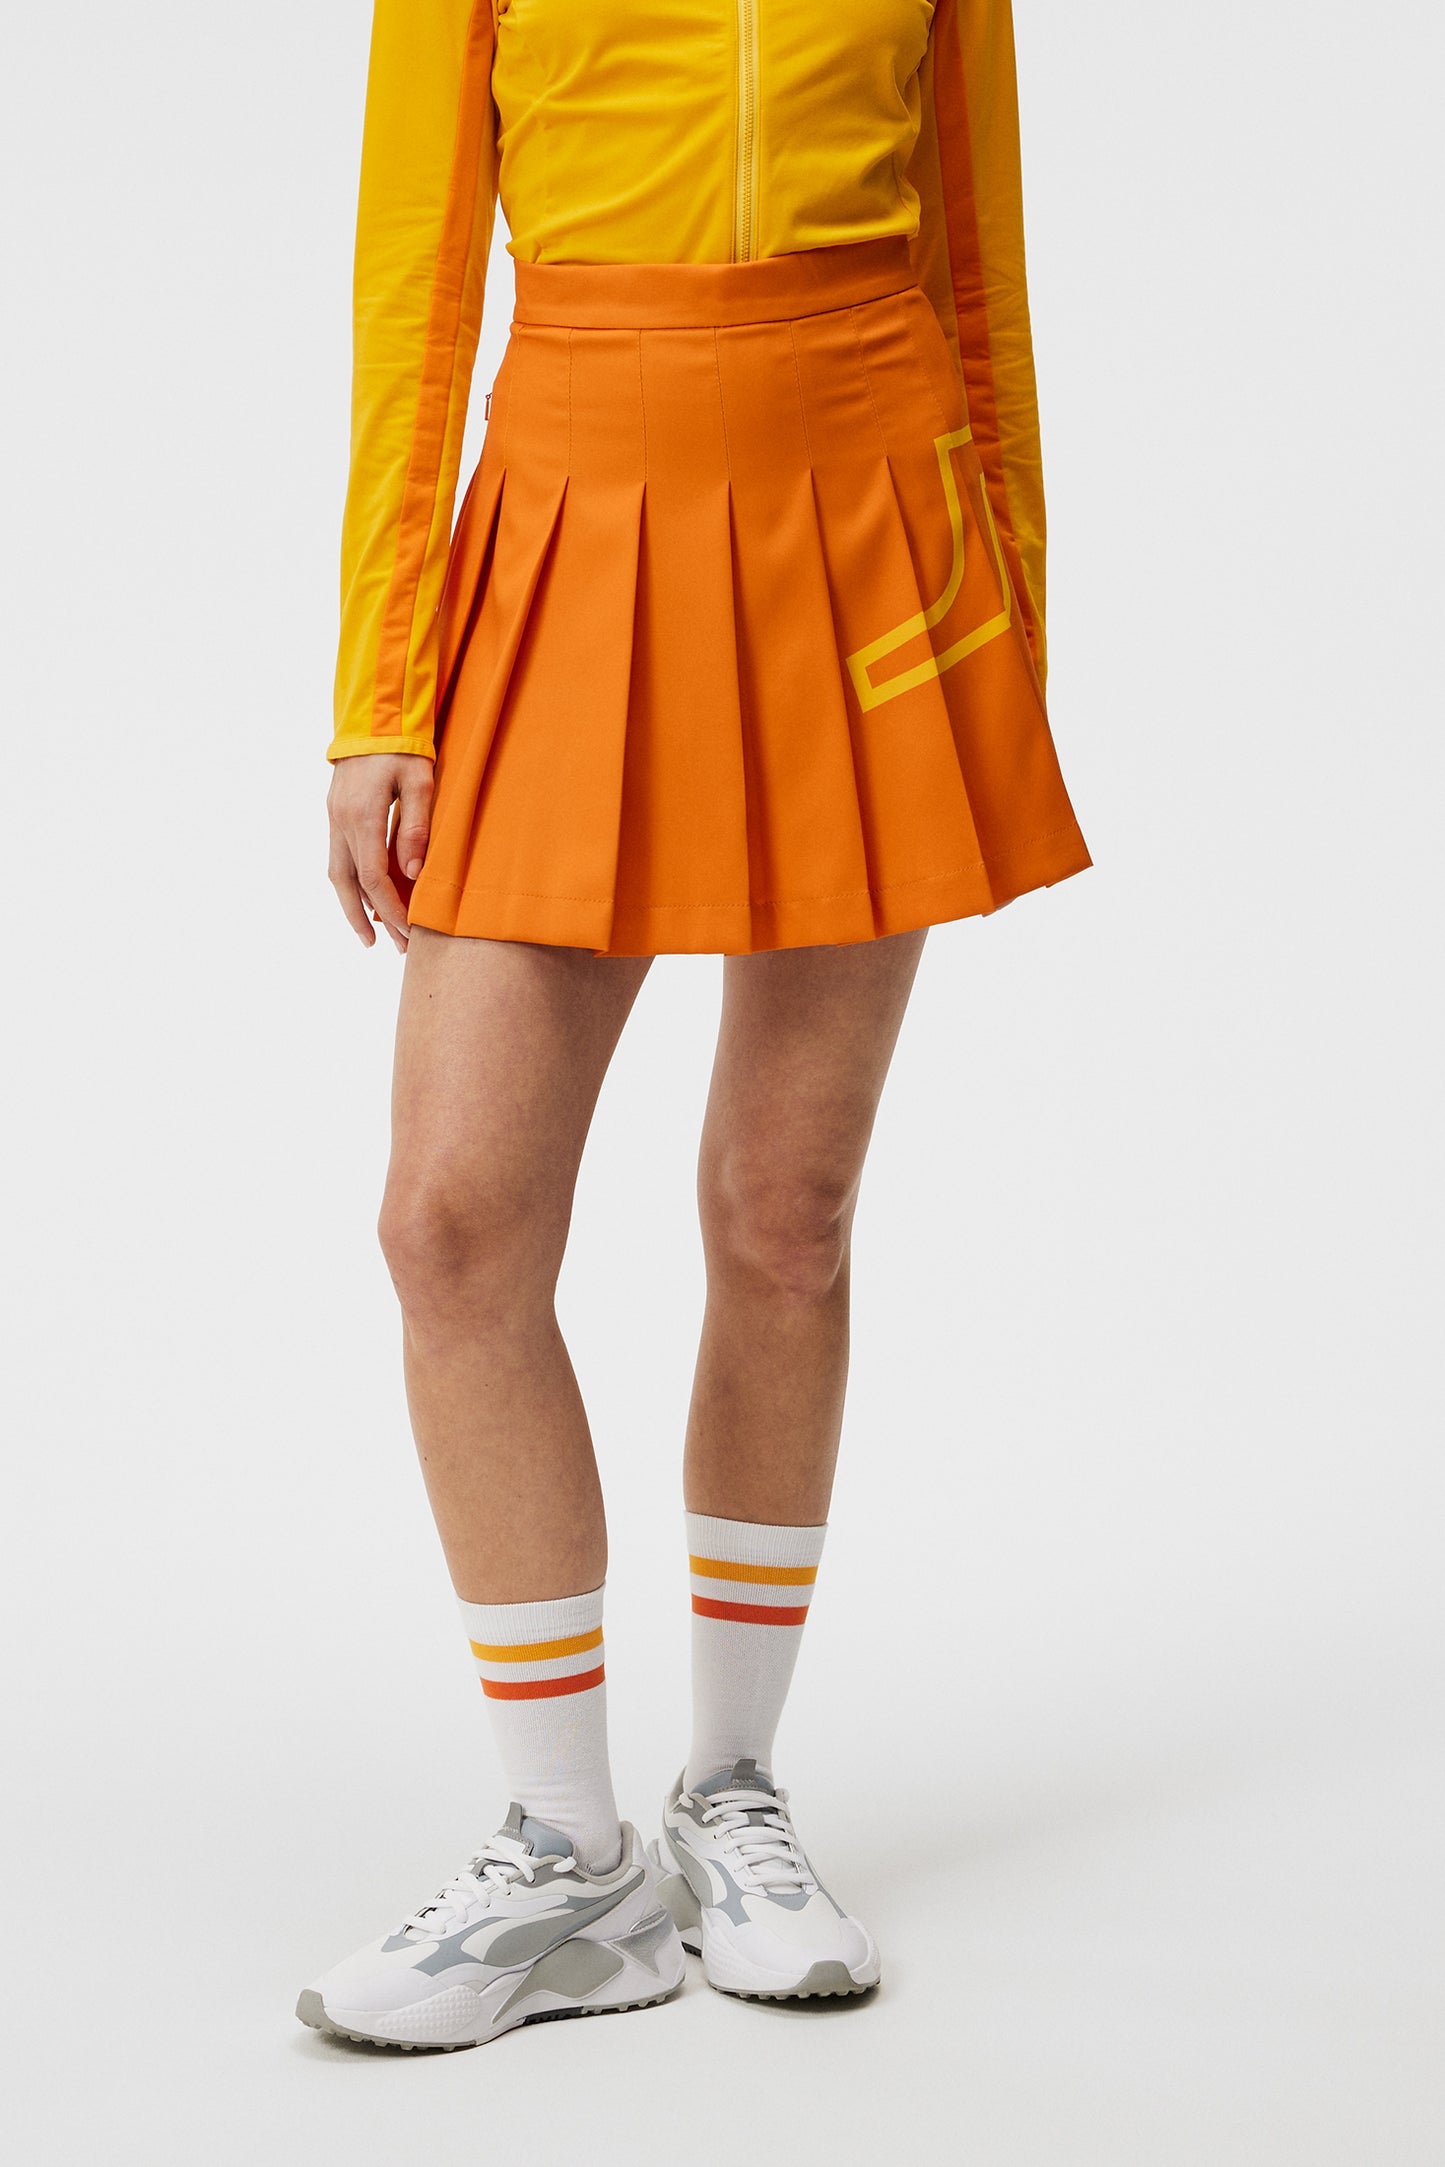 Naomi Skirt / Russet Orange